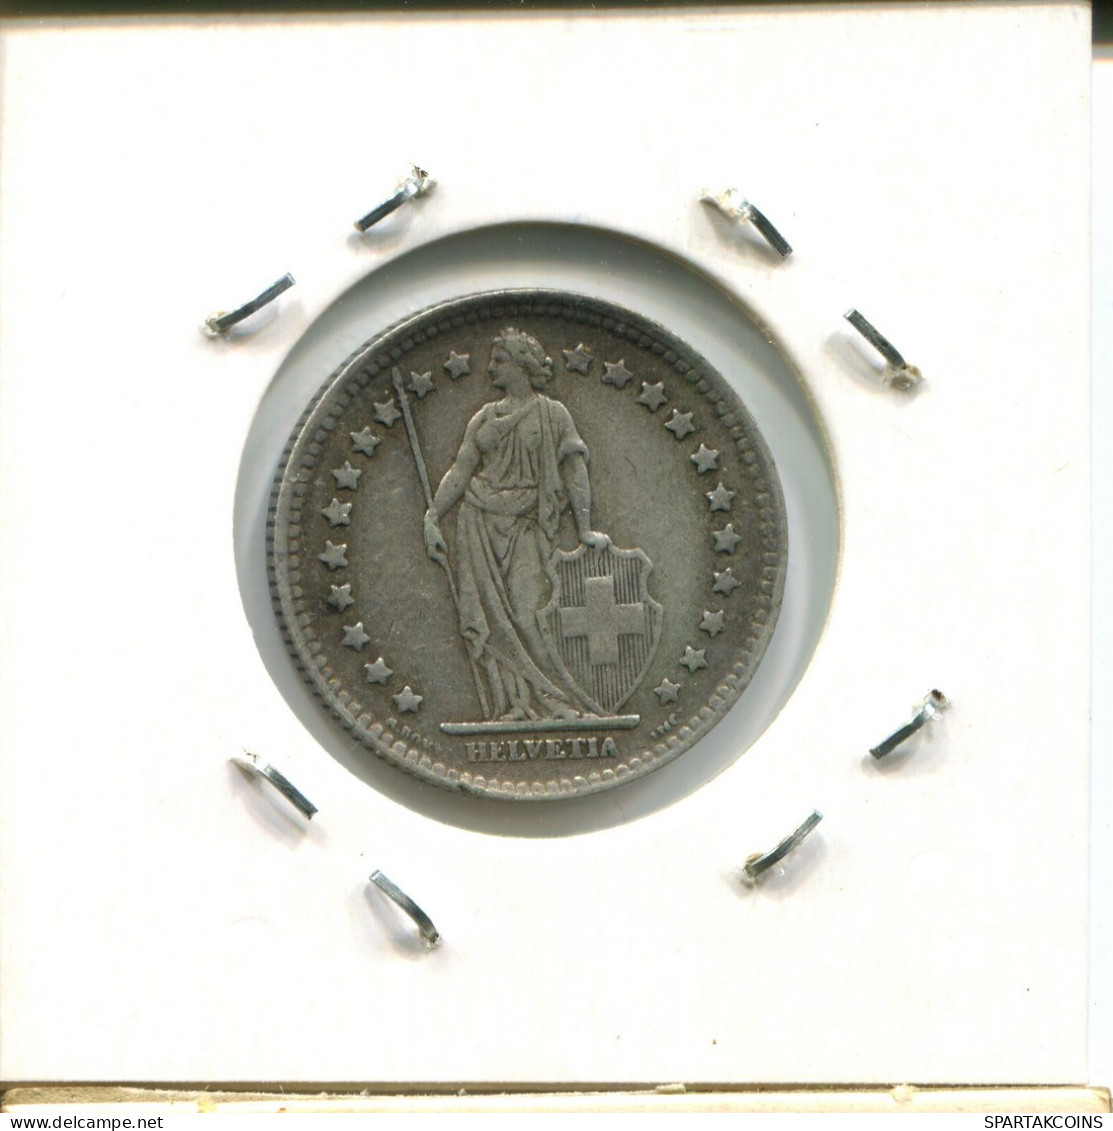 1 FRANC 1944 B SWITZERLAND Coin SILVER #AY043.3.U.A - Altri & Non Classificati